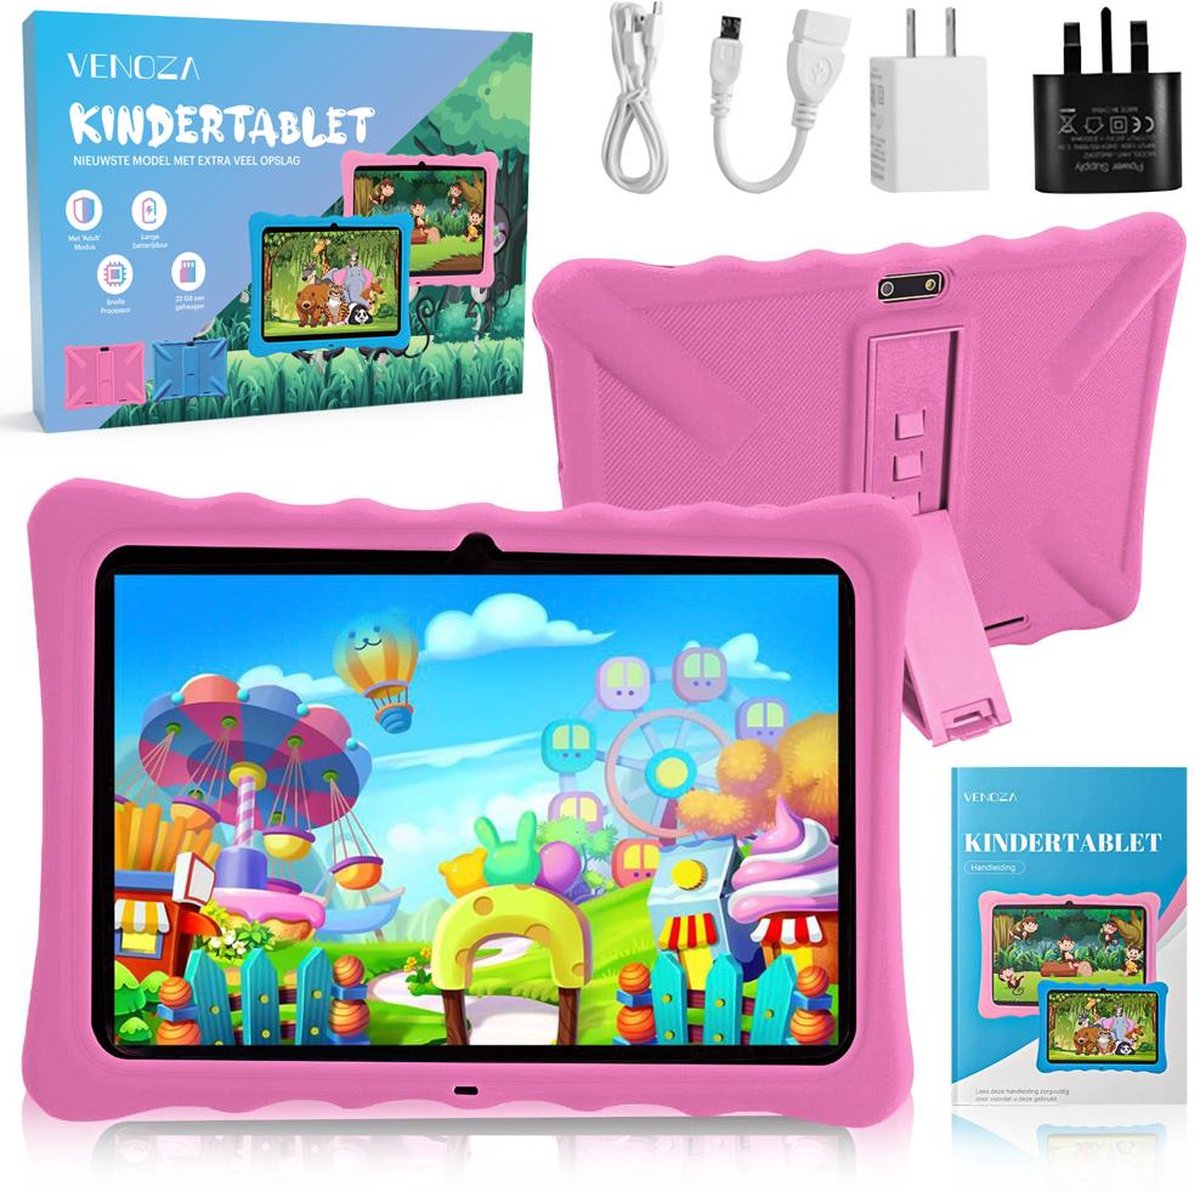 Venoza® Kindertablet – Nieuwste Model – Tablet – Tablet Voor Kinderen – Android 10 – 100% Kidsproof – 32GB – 10 Inch – 5000 mAh Batterij